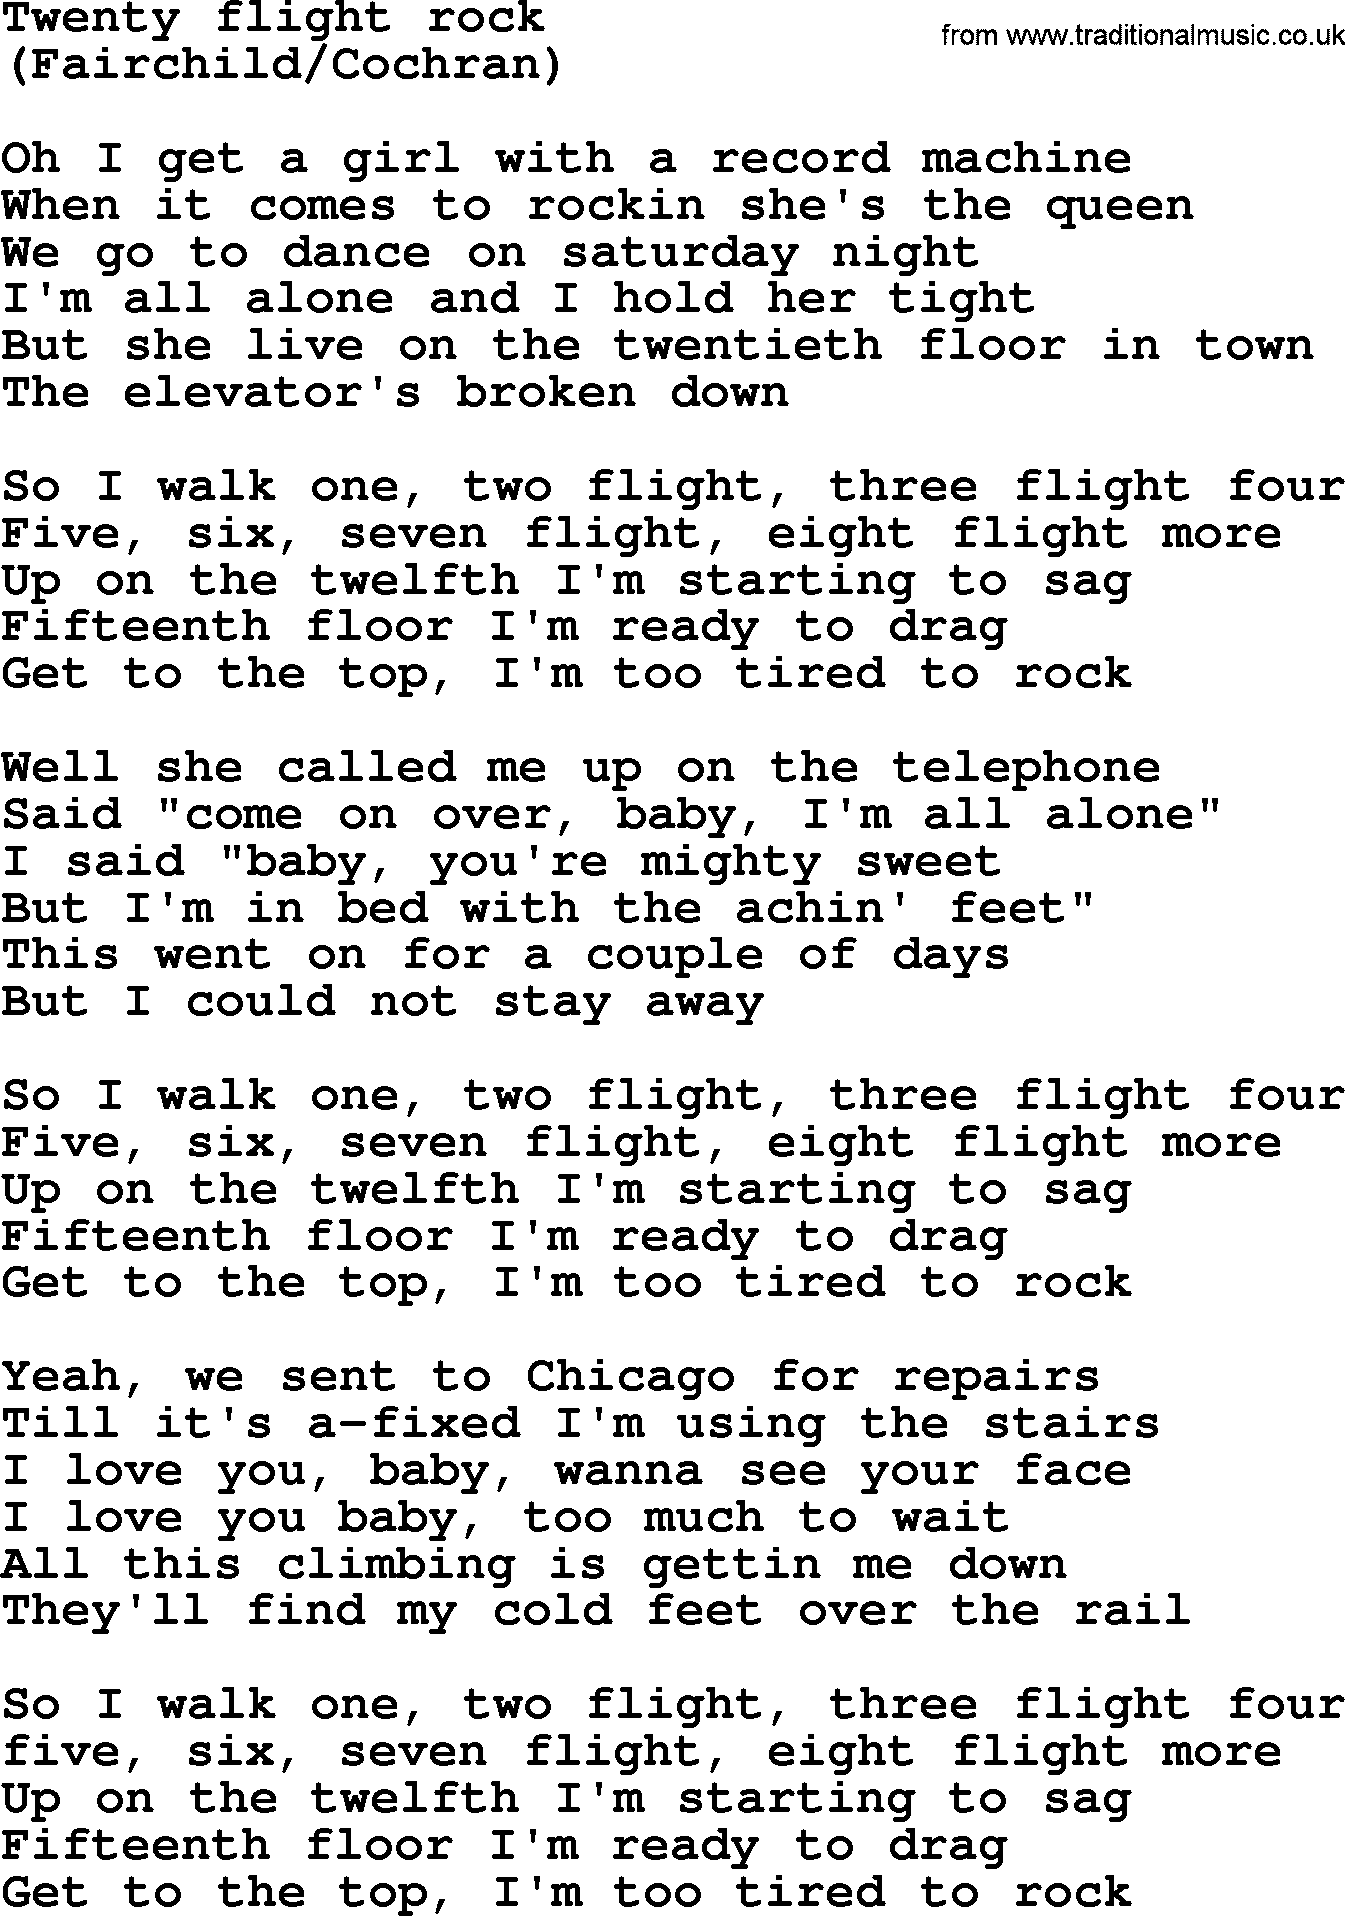 Bruce Springsteen song: Twenty Flight Rock lyrics